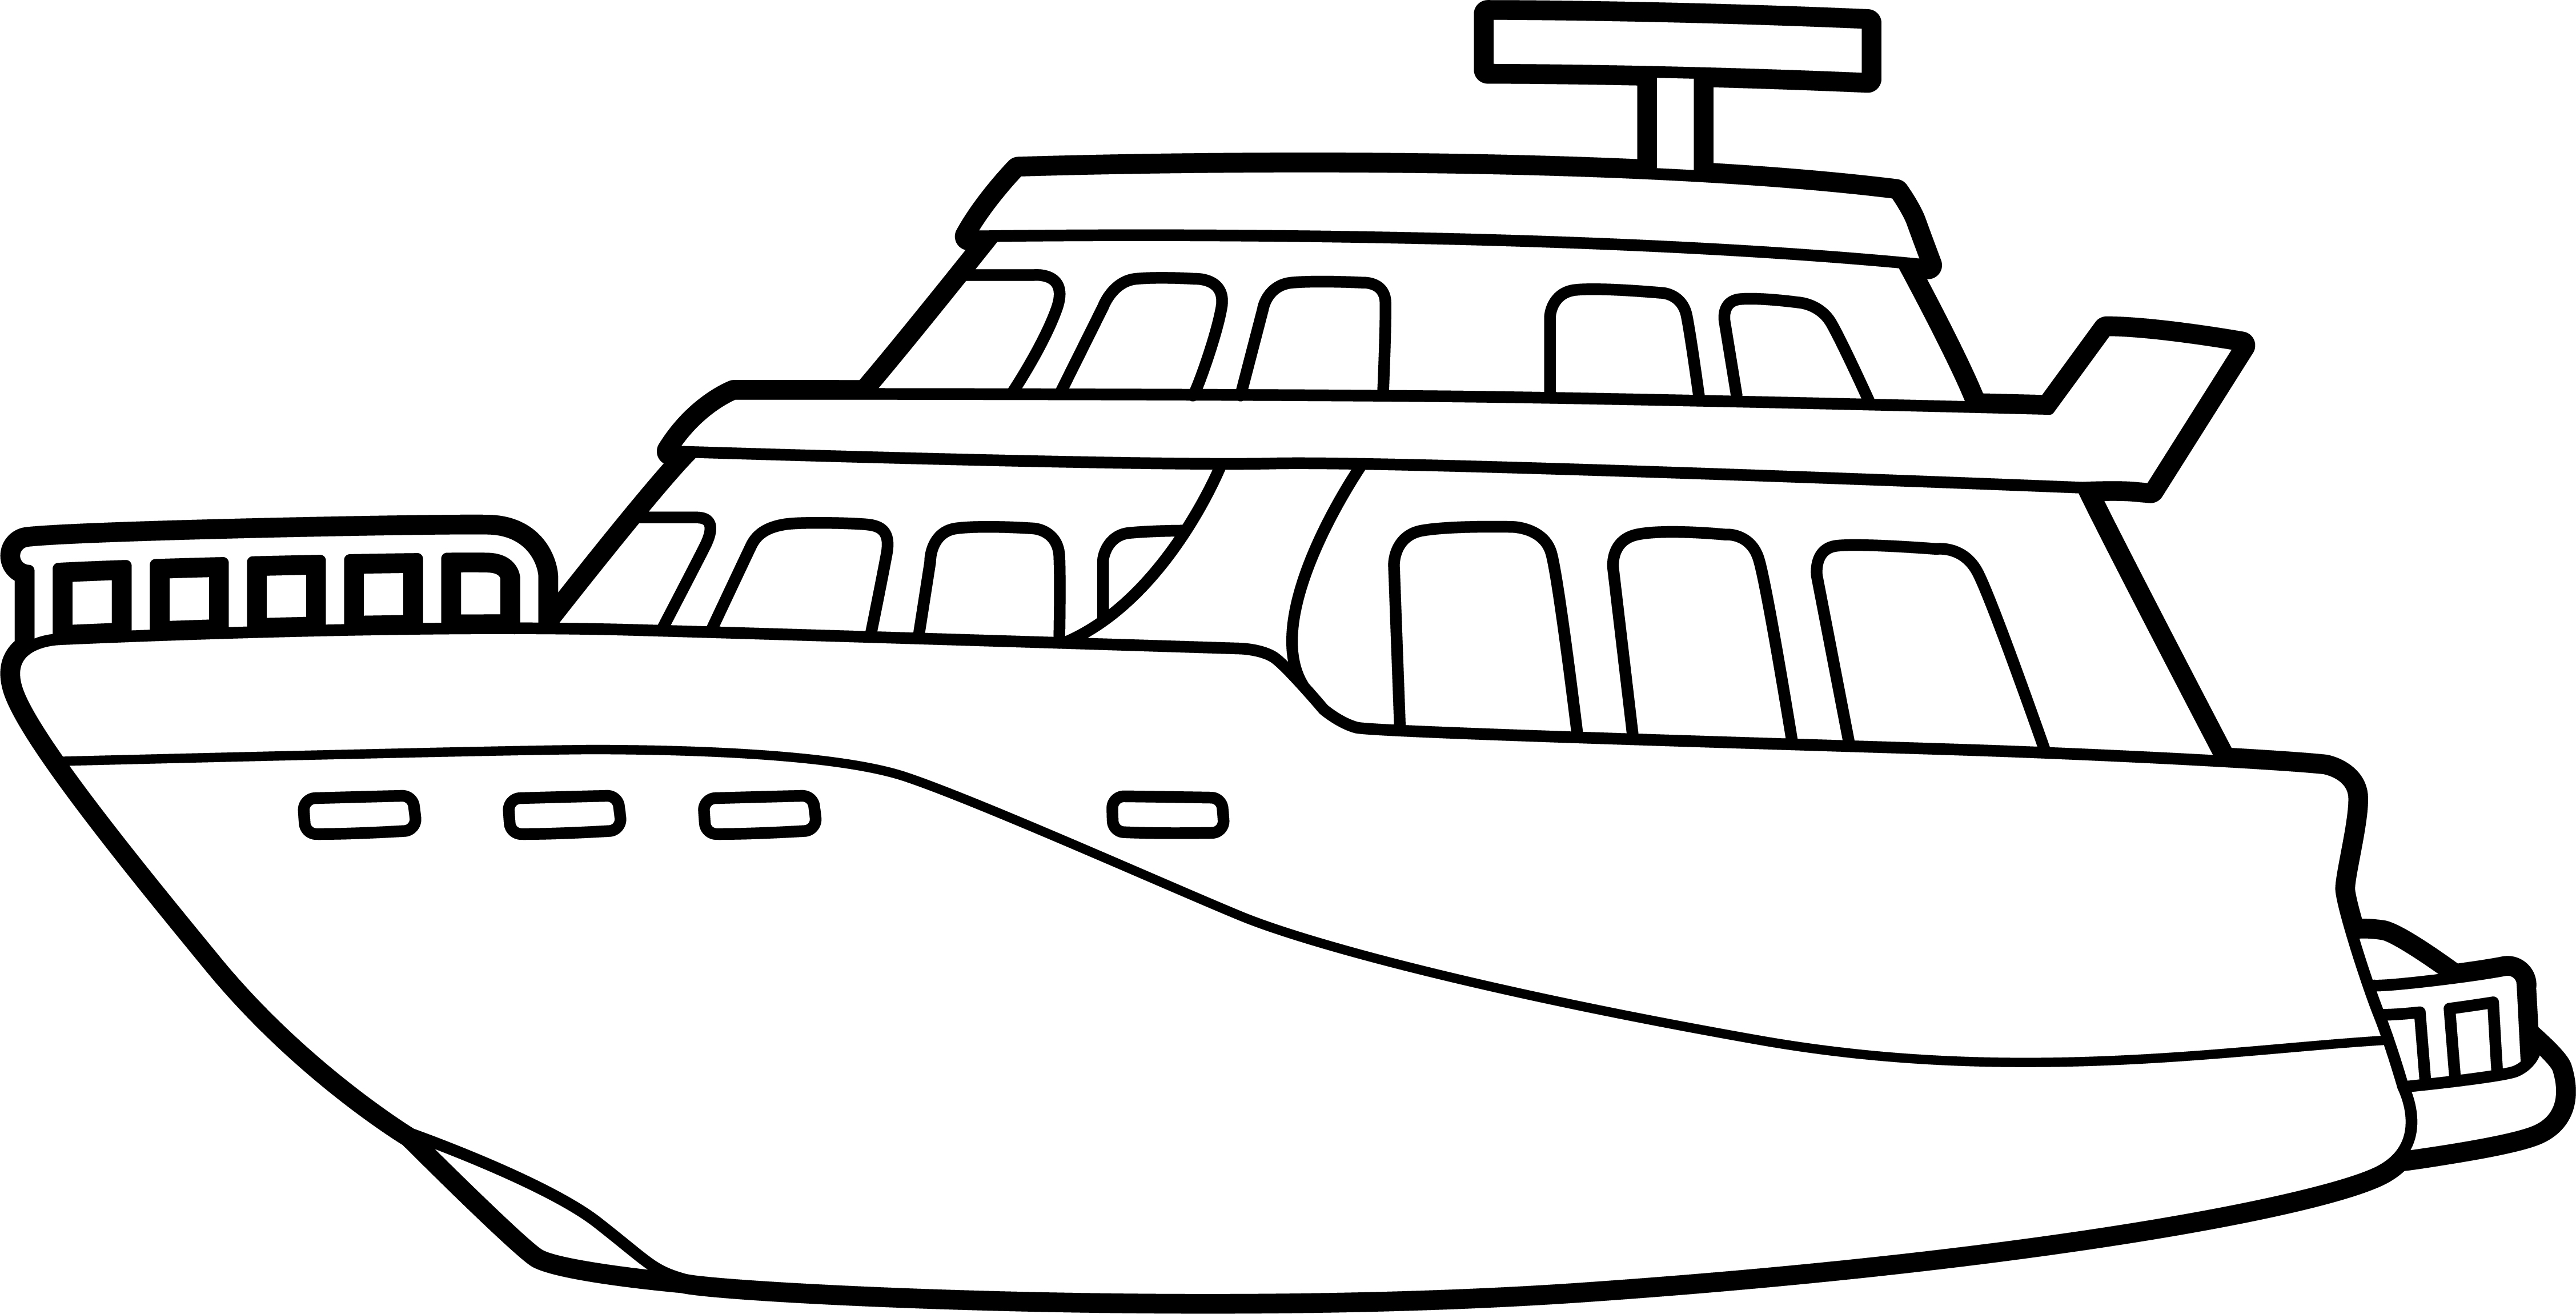 Раскраска корабль яхта формата А4 в высоком качестве